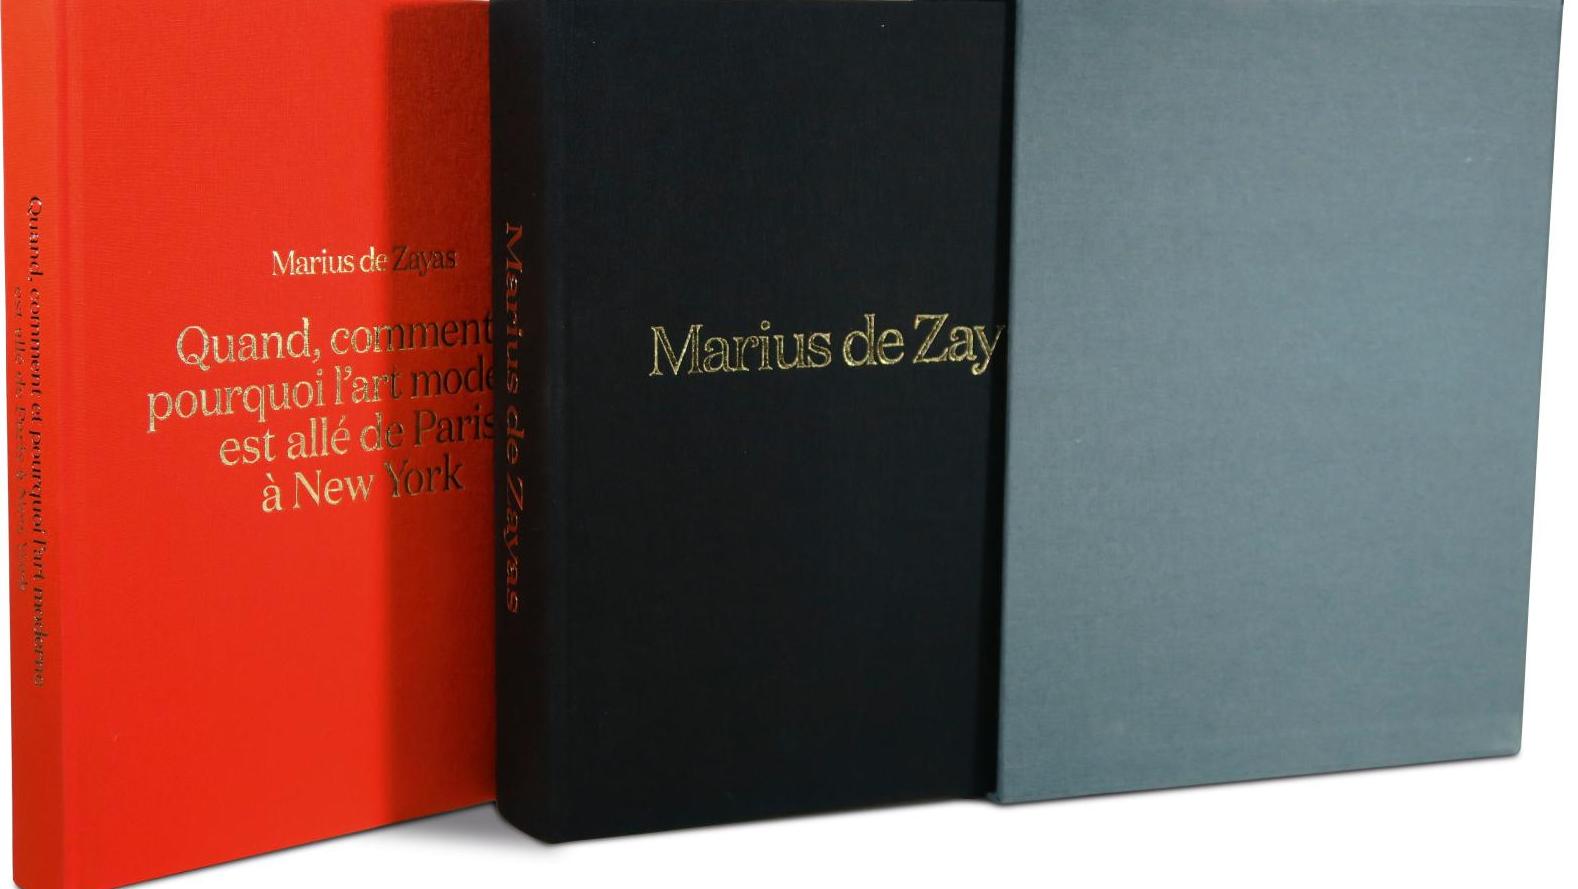   Biographie : Marius de Zayas